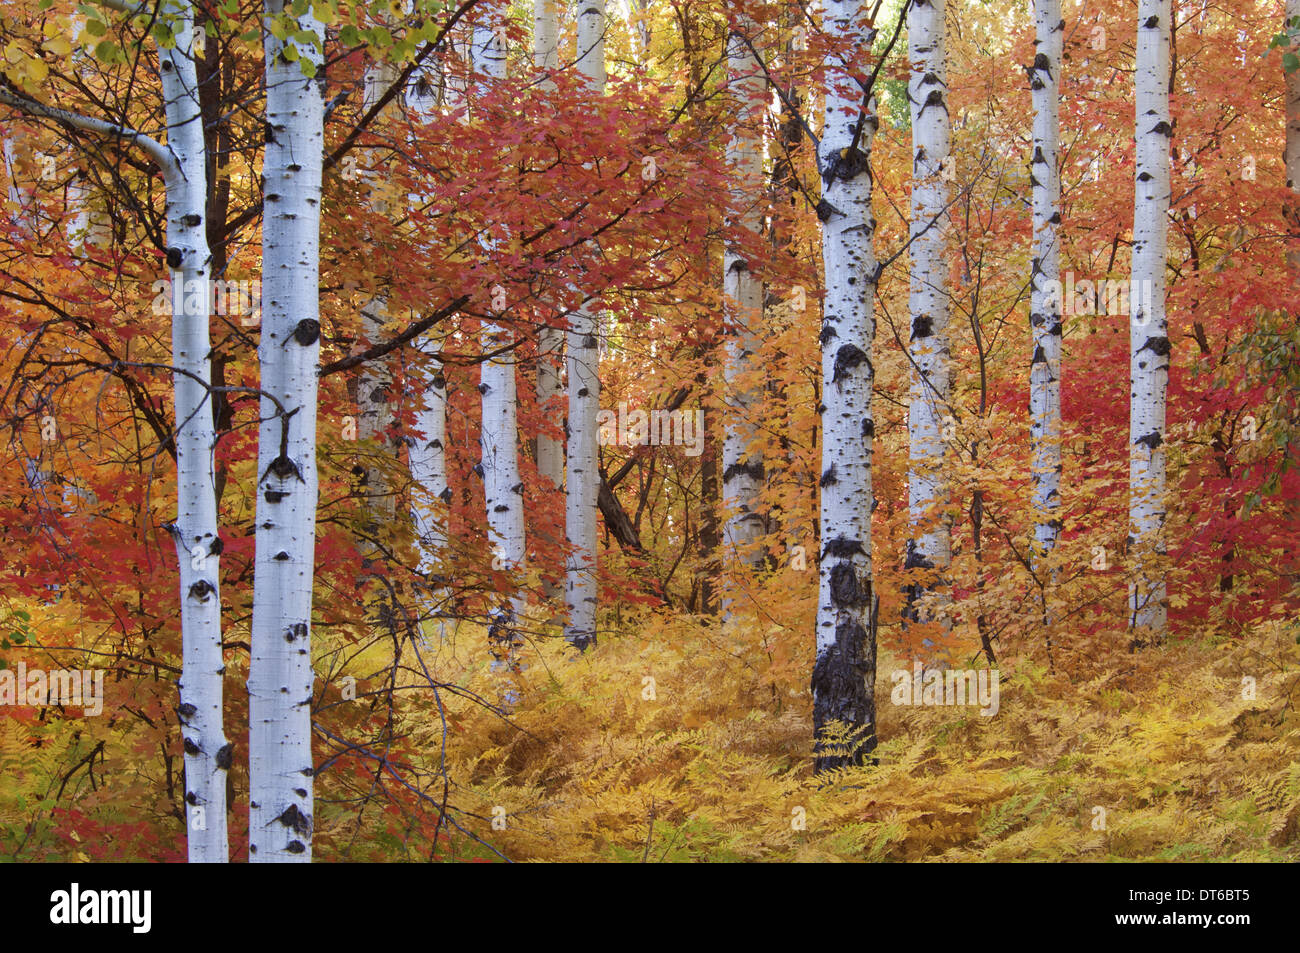 Forêt de la Rocky Mountain Maple et tremble arbre dans les monts Wasatch mountains. Saison d'automne. Banque D'Images